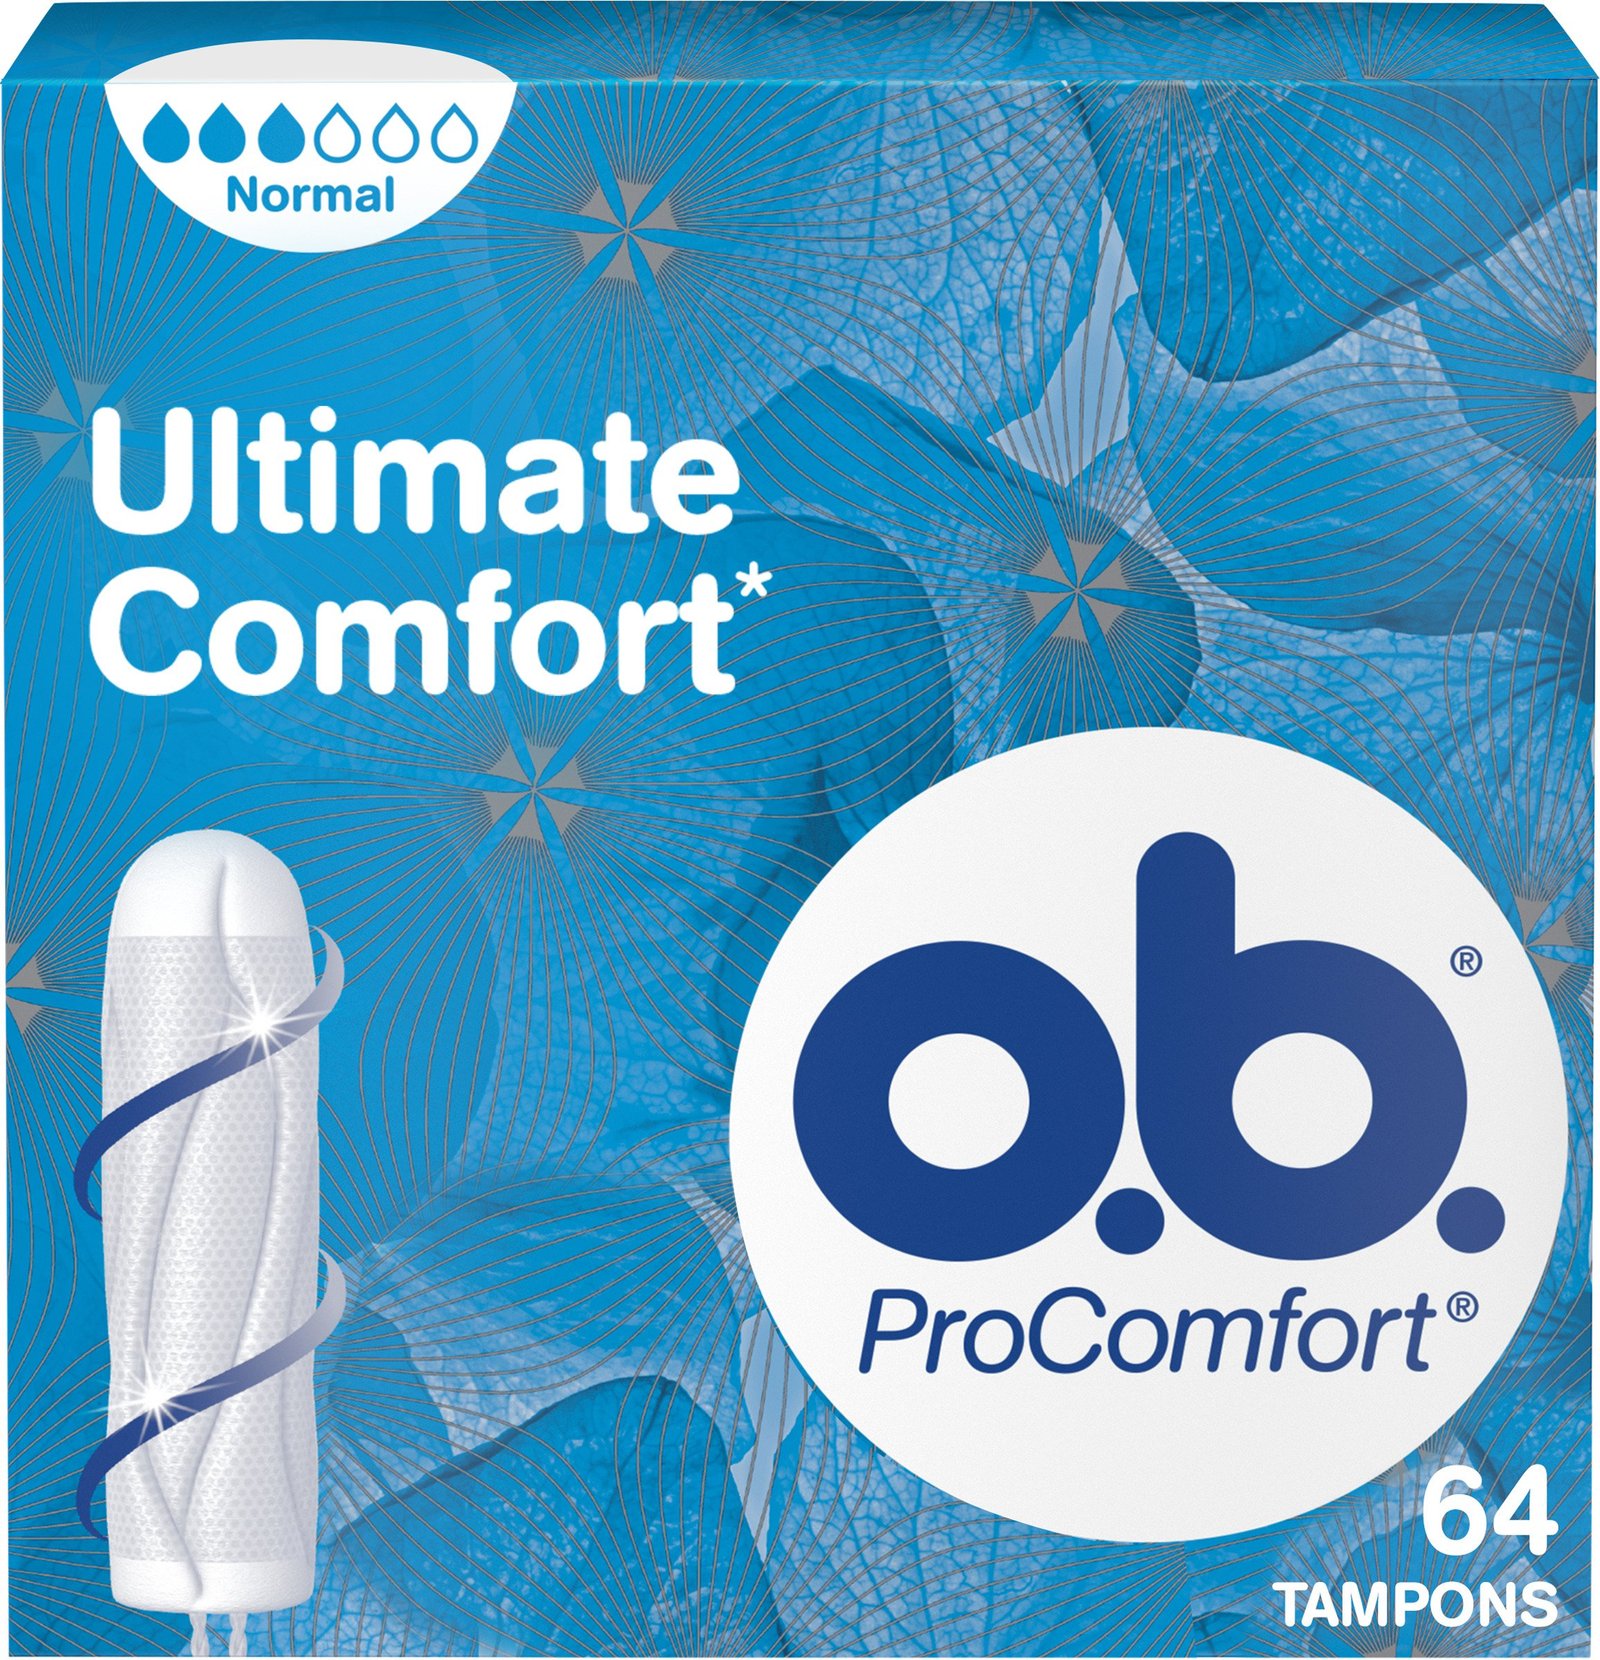 o.b ProComfort Tampong Normal 64 st